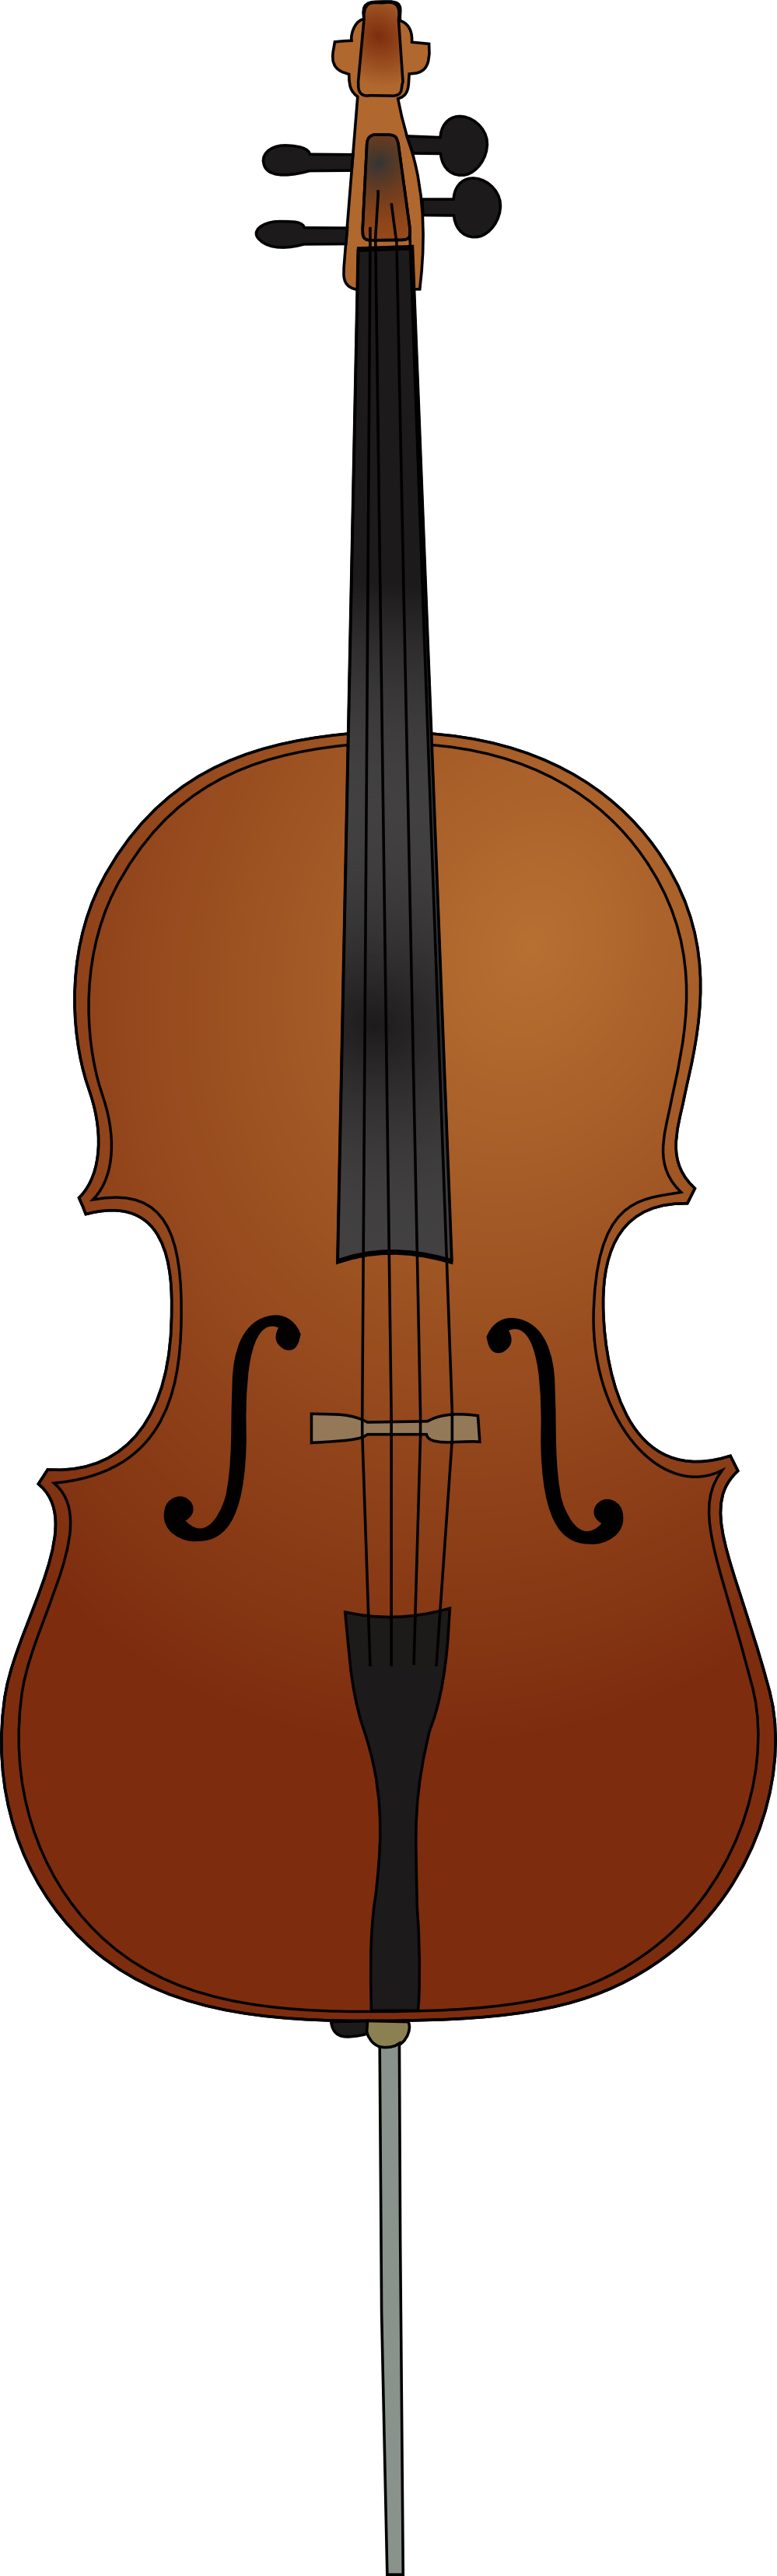 Free Cello Clip Art